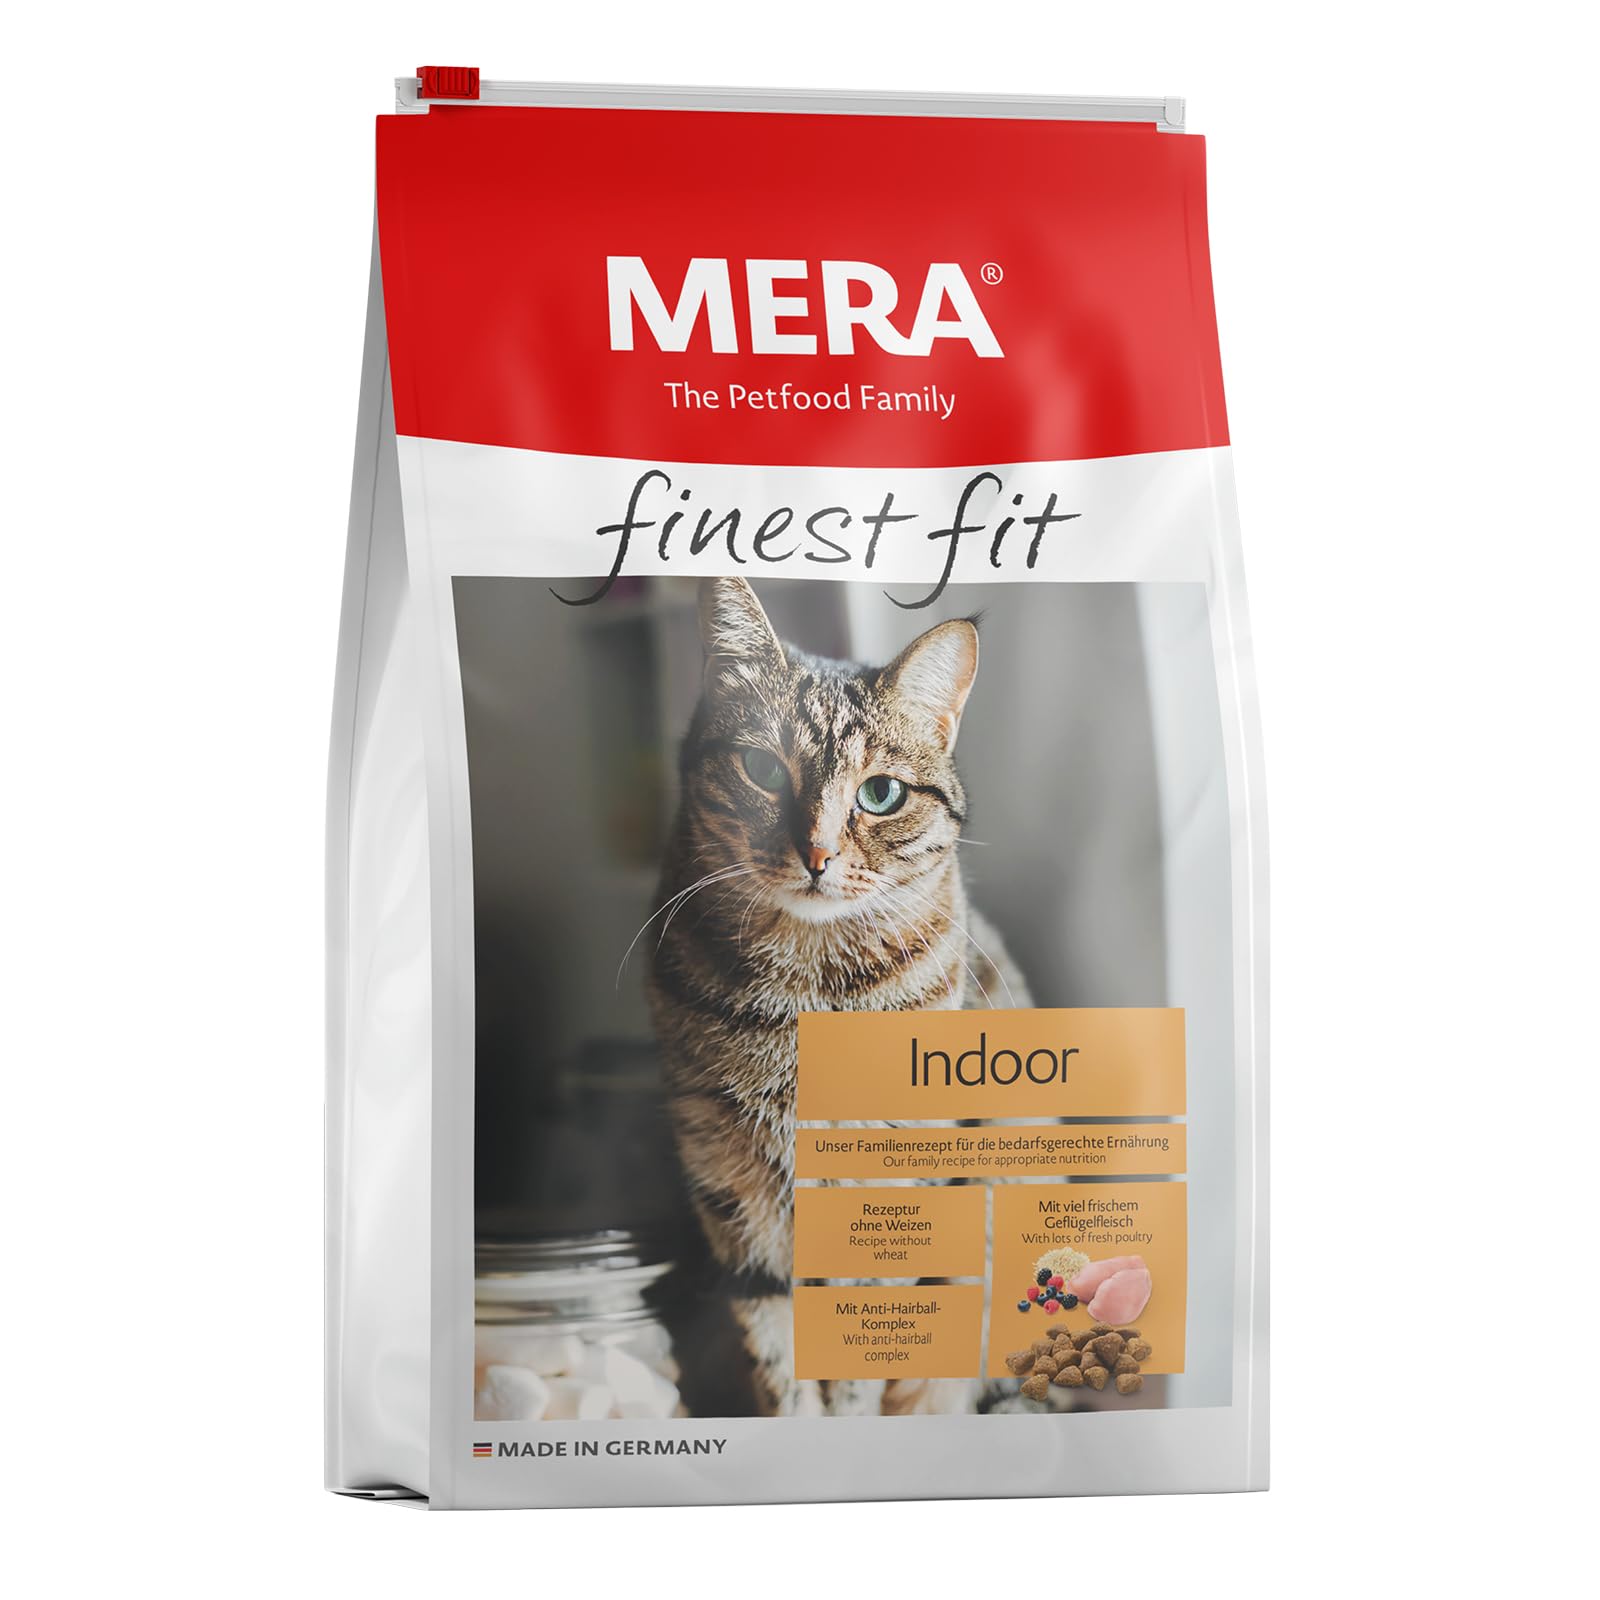 MERA finest fit Indoor, Katzenfutter trocken für aktive Katzen, Trockenfutter aus frischem Geflügel und Reis, gesundes Futter für Hauskatzen, ohne Zucker (4 kg)